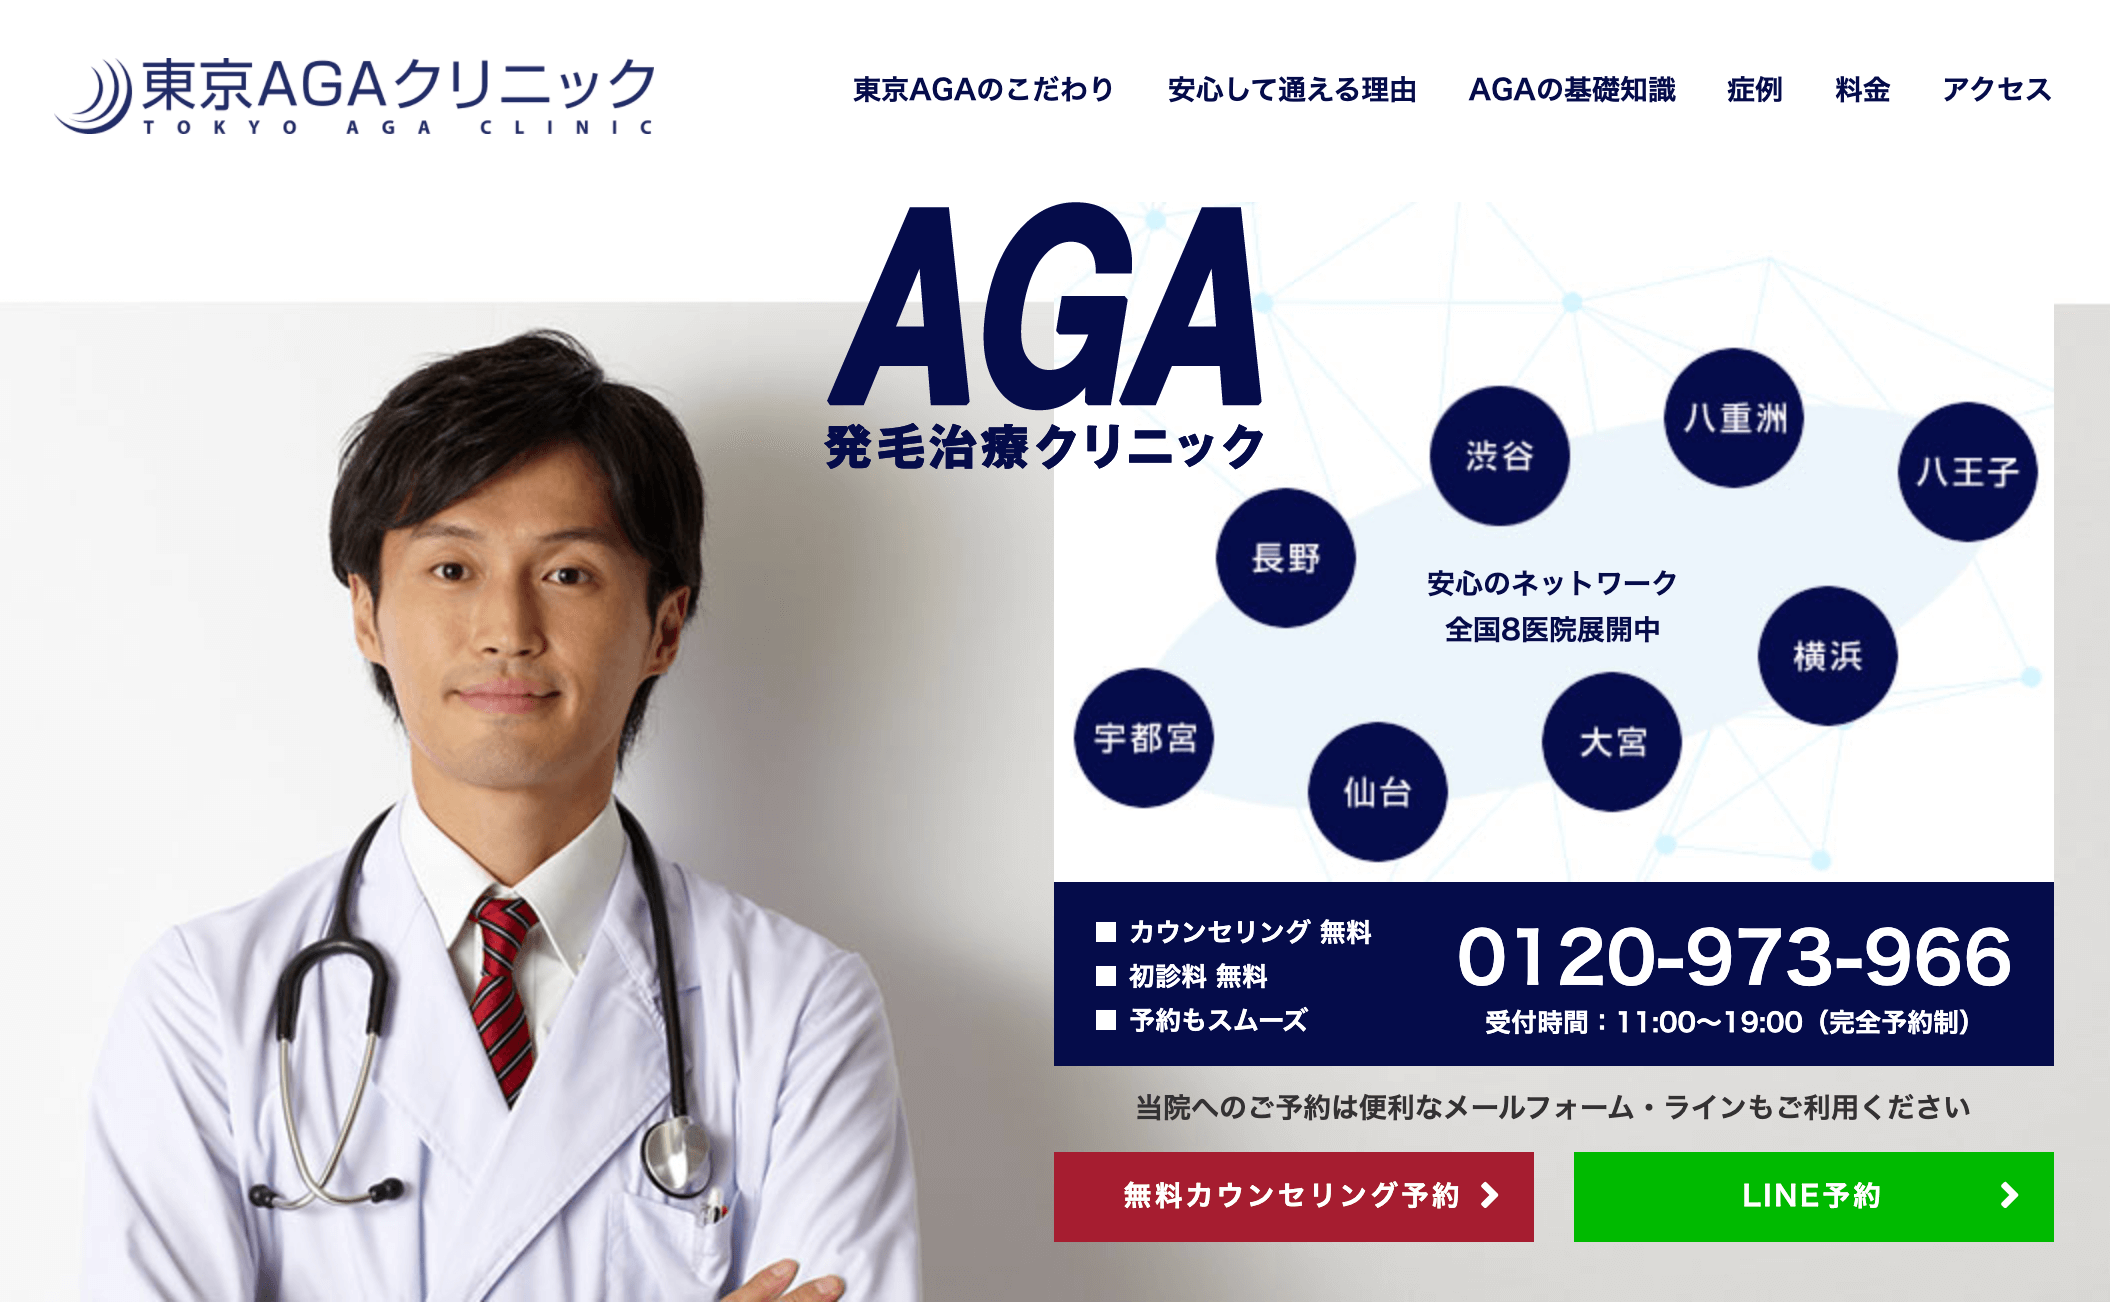 東京AGAクリニックの公式ページ